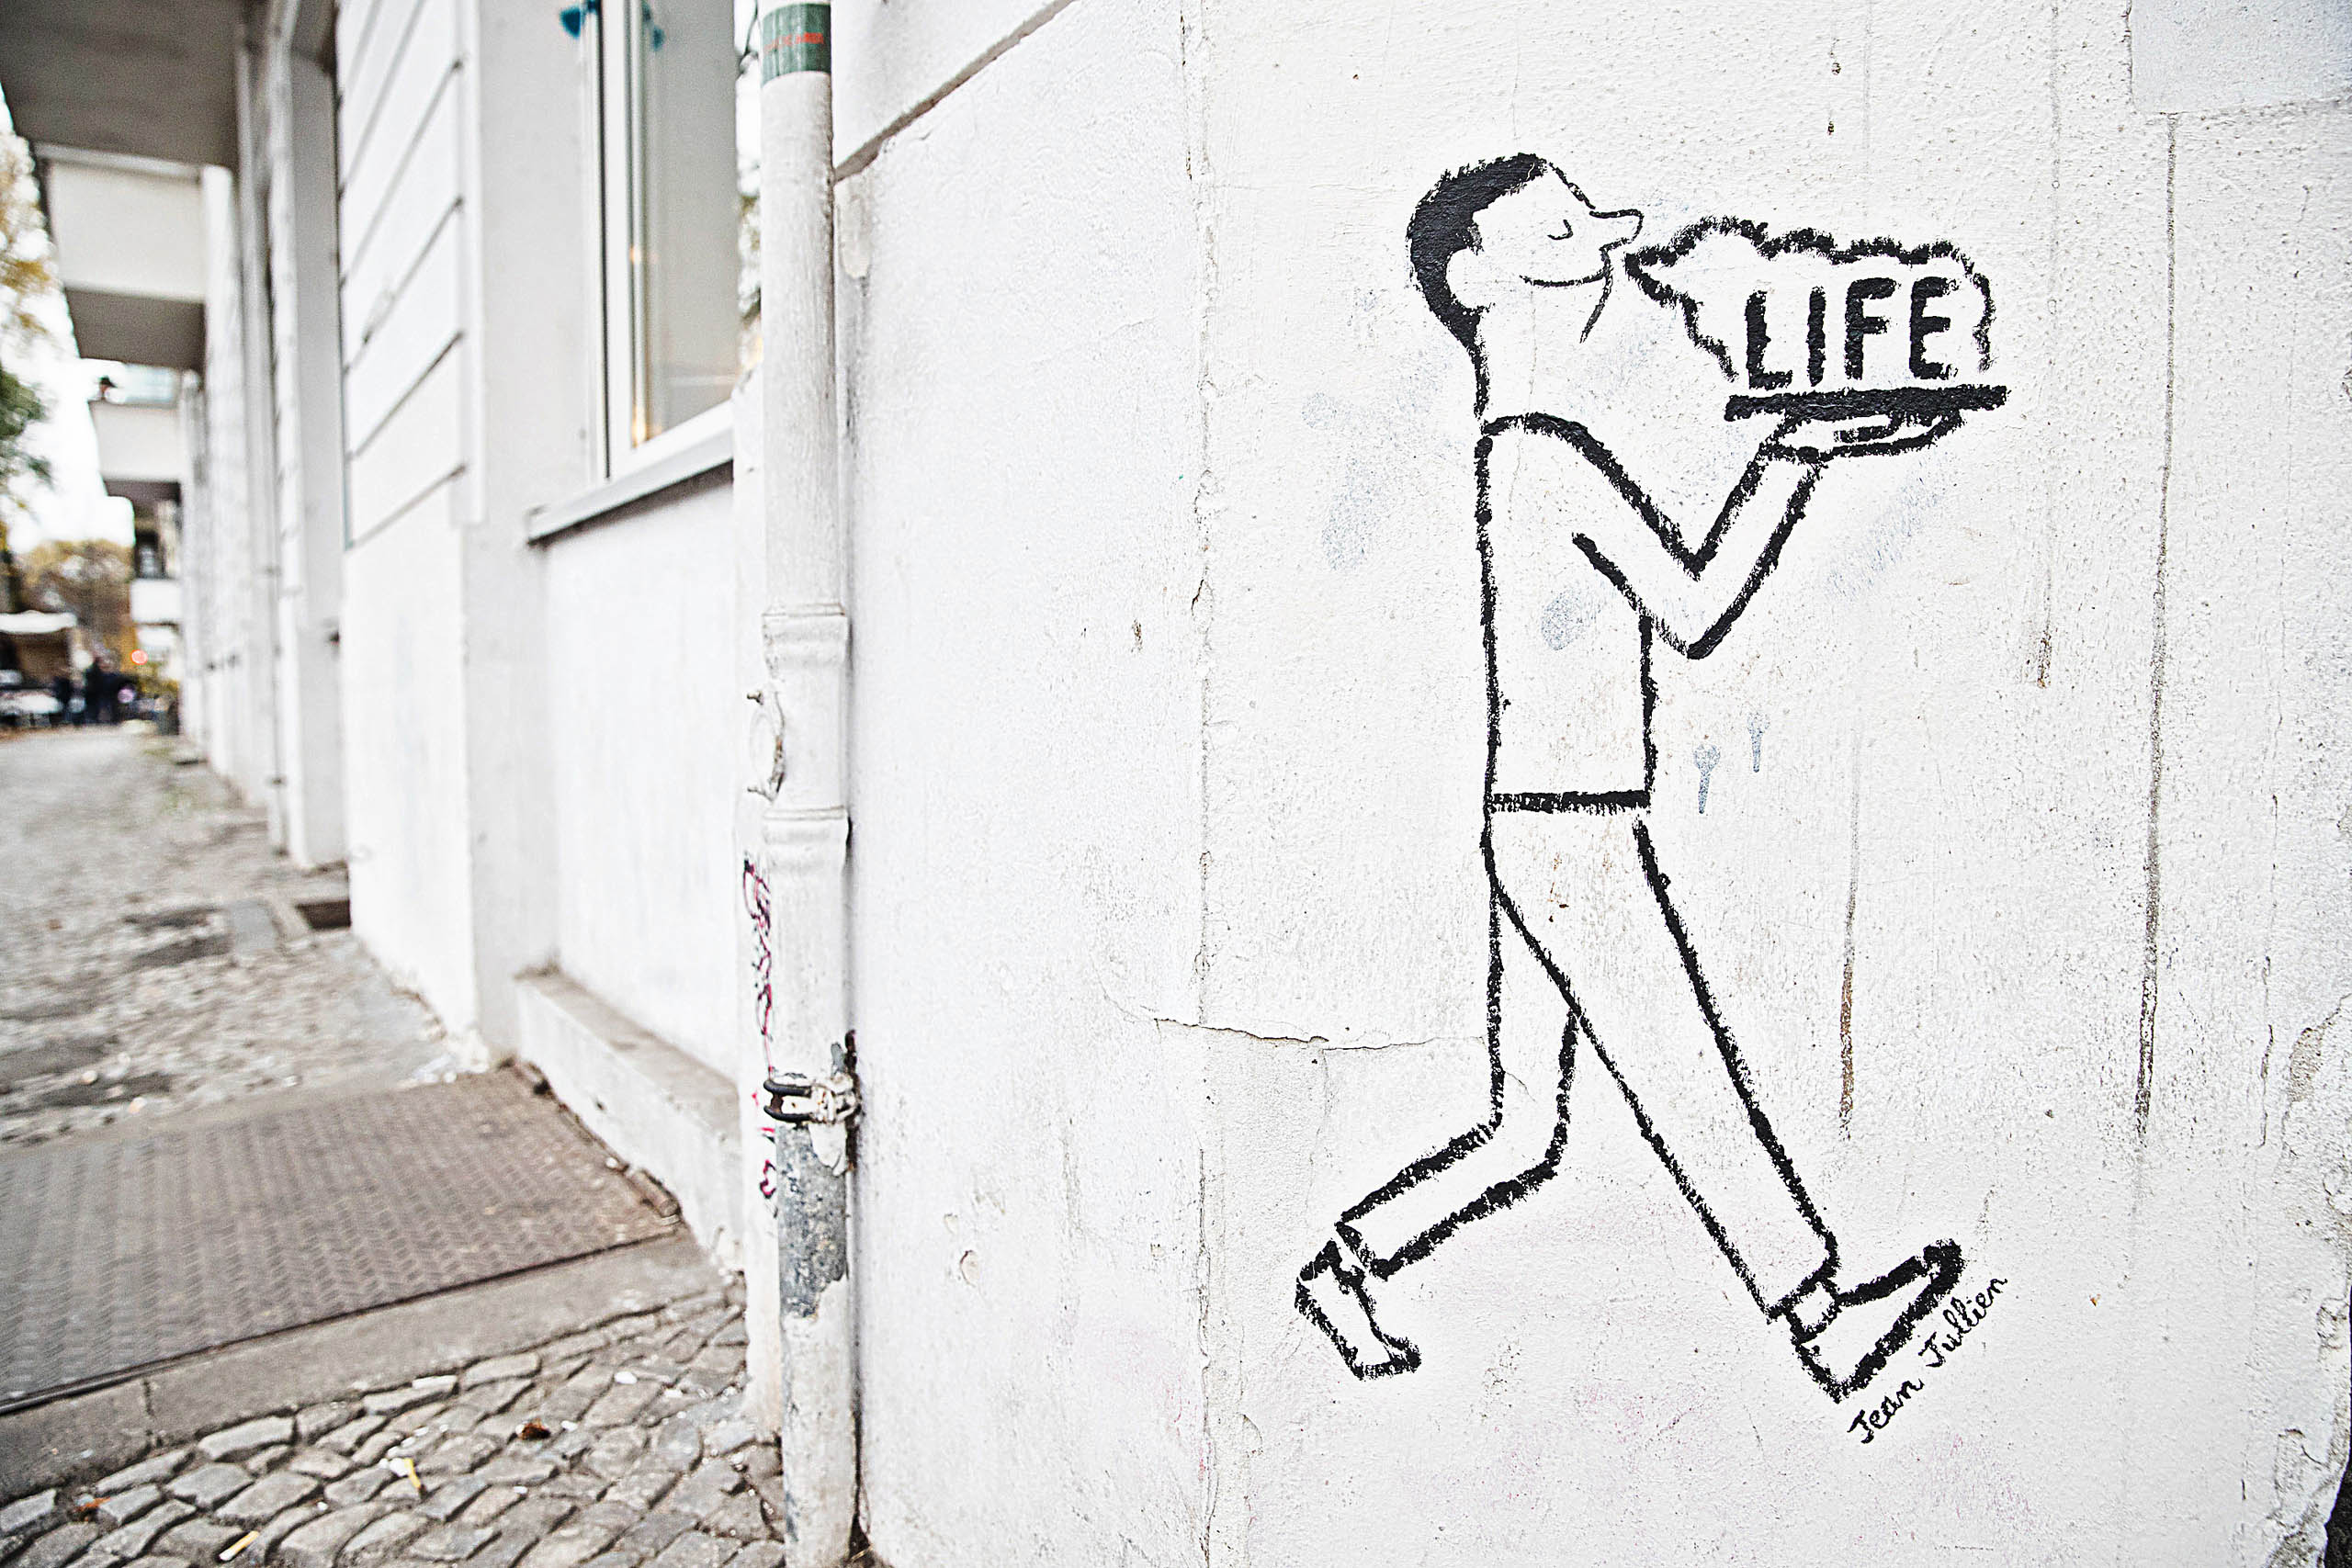 Berlin Street Art by Jean Jullien